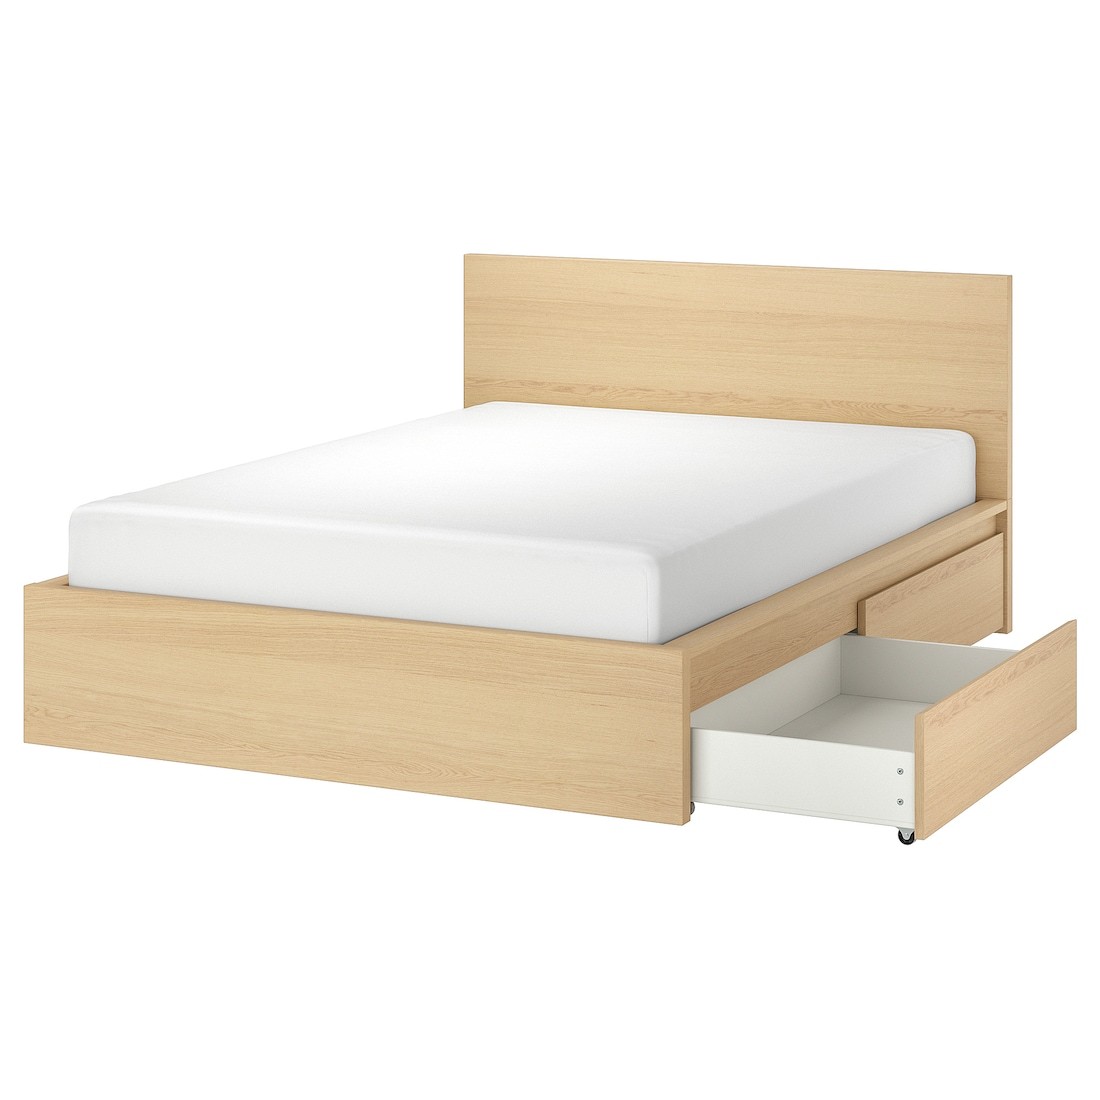 IKEA MALM МАЛЬМ Кровать двуспальная с 4 ящиками, дубовый шпон беленый / Lindbåden, 160x200 см 59495018 | 594.950.18